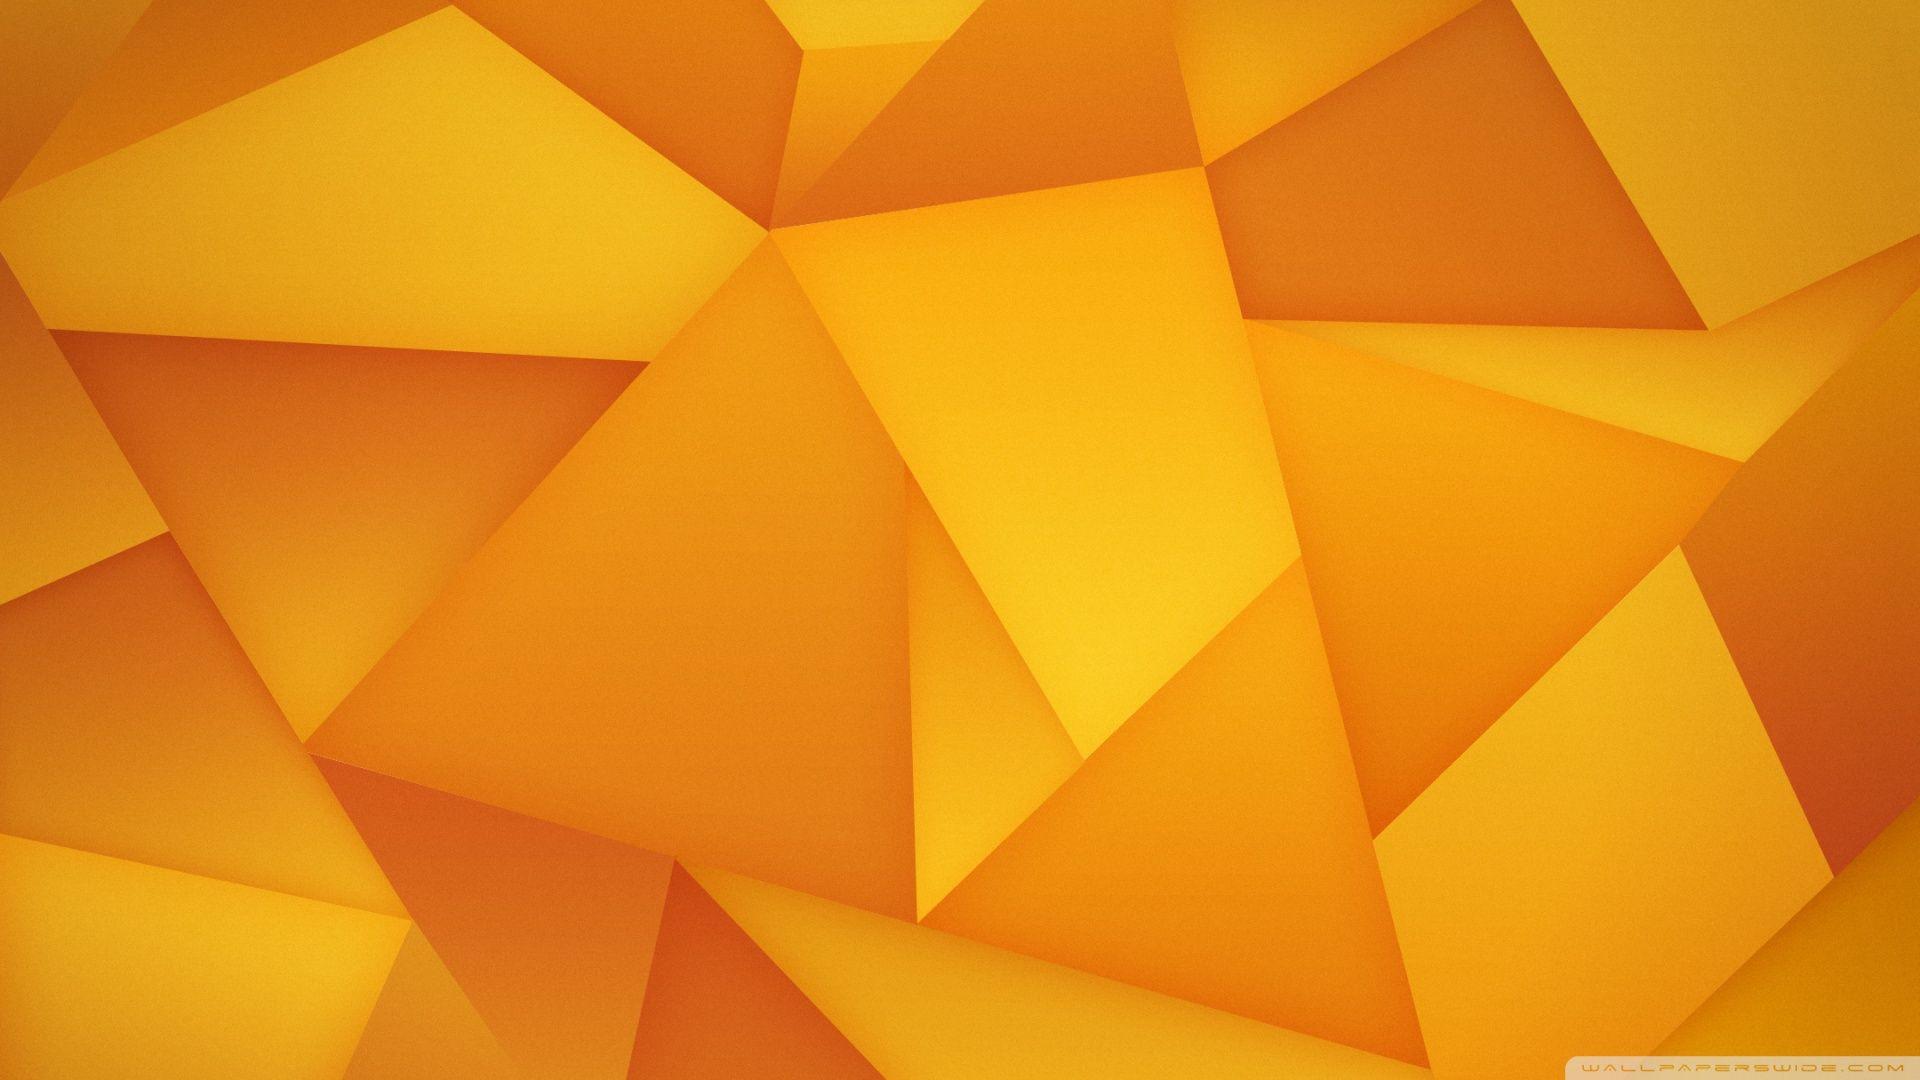 Triangles HD desktop wallpaper, Widescreen, High Definition